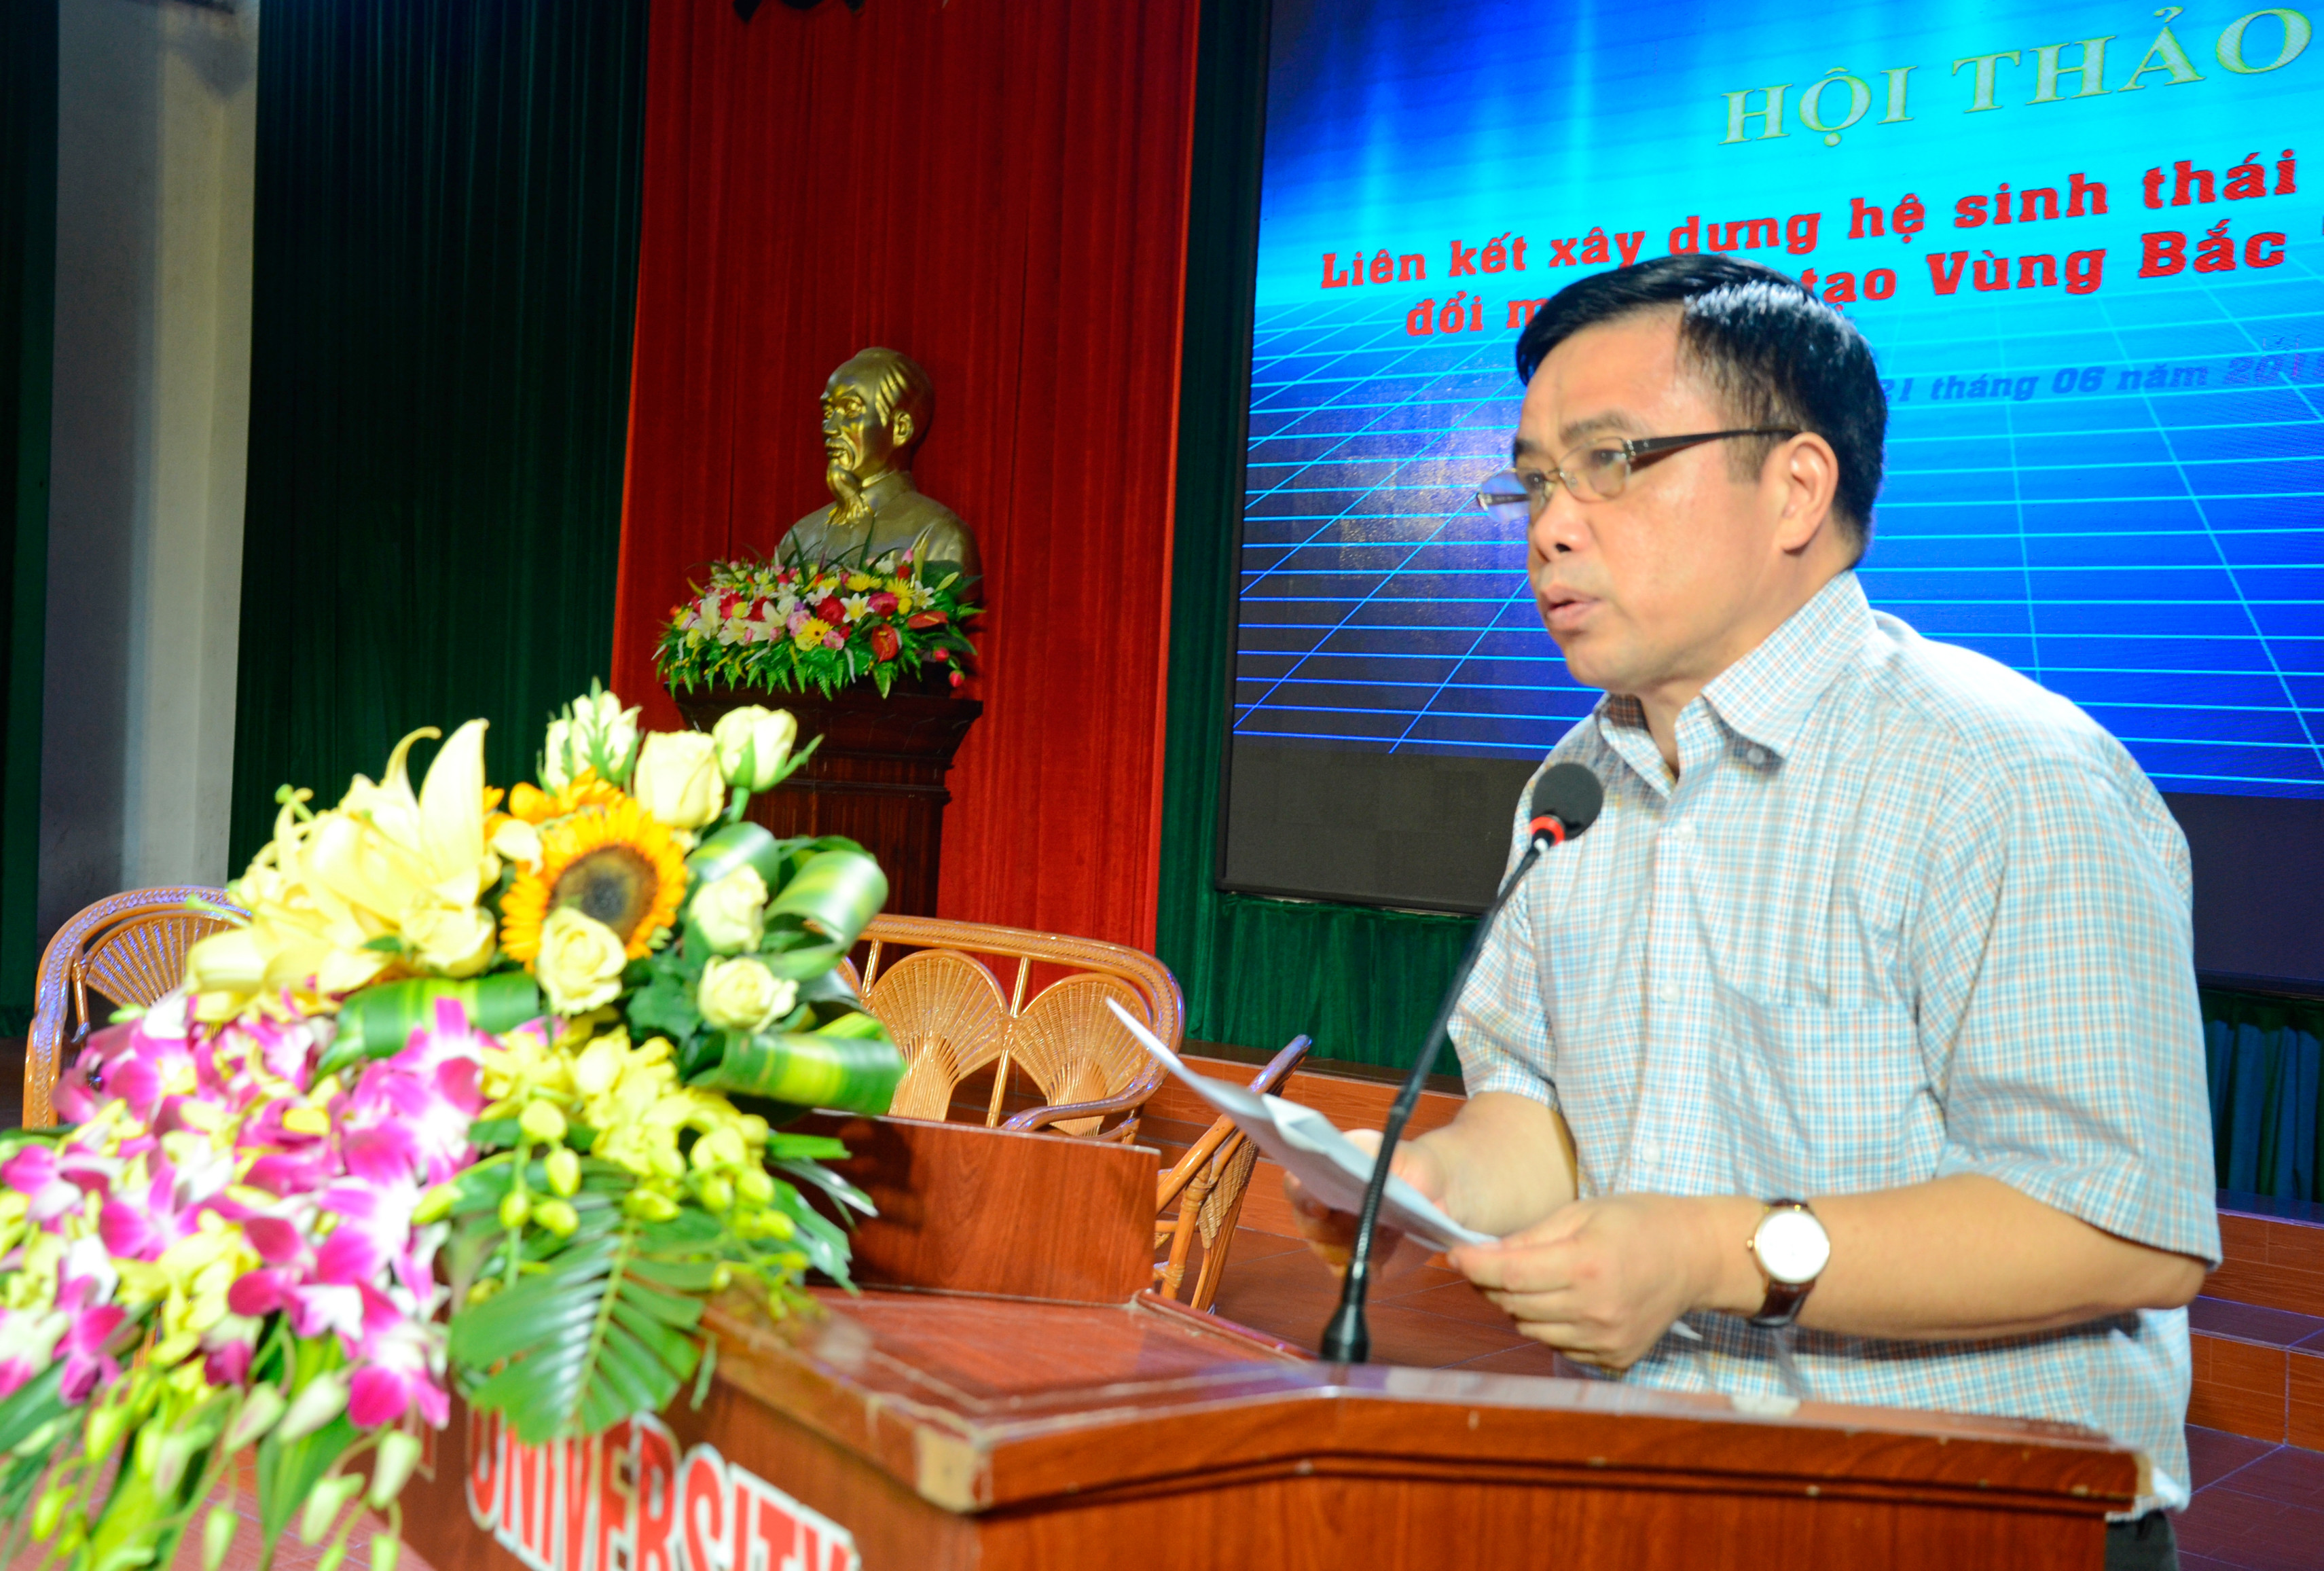 Phó Chủ tịch UBND tỉnh Huỳnh Thanh Điền phát biểu chào mừng tại Hội thảo. Ảnh Thanh Lê